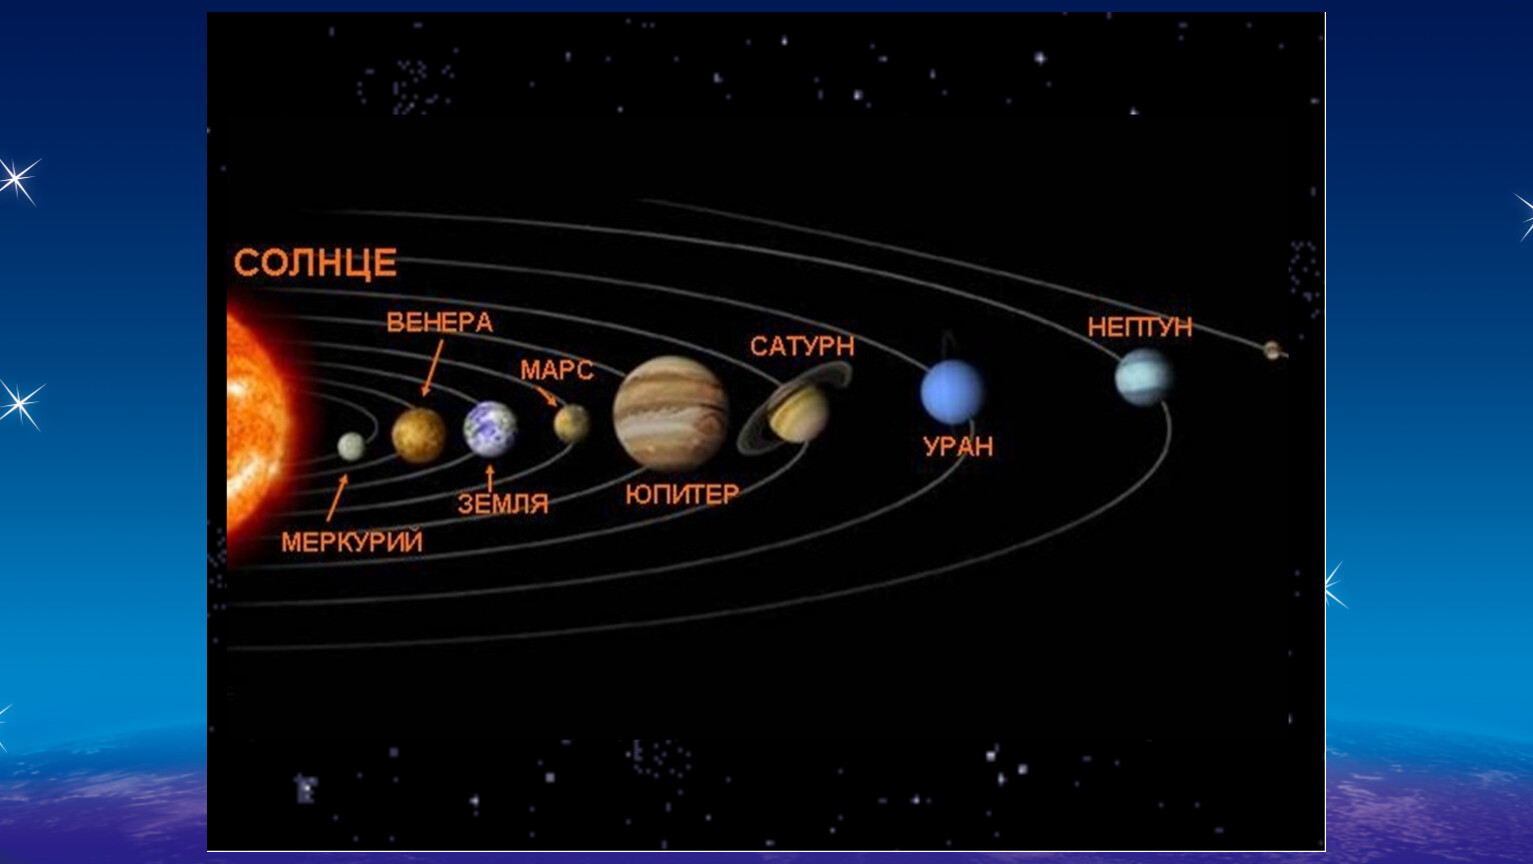 Сколько планет. Расположение планет солнечной системы. Строение солнечной системы по порядку от солнца. Солнечная система Планетная система. Схема расположения планет солнечной системы.